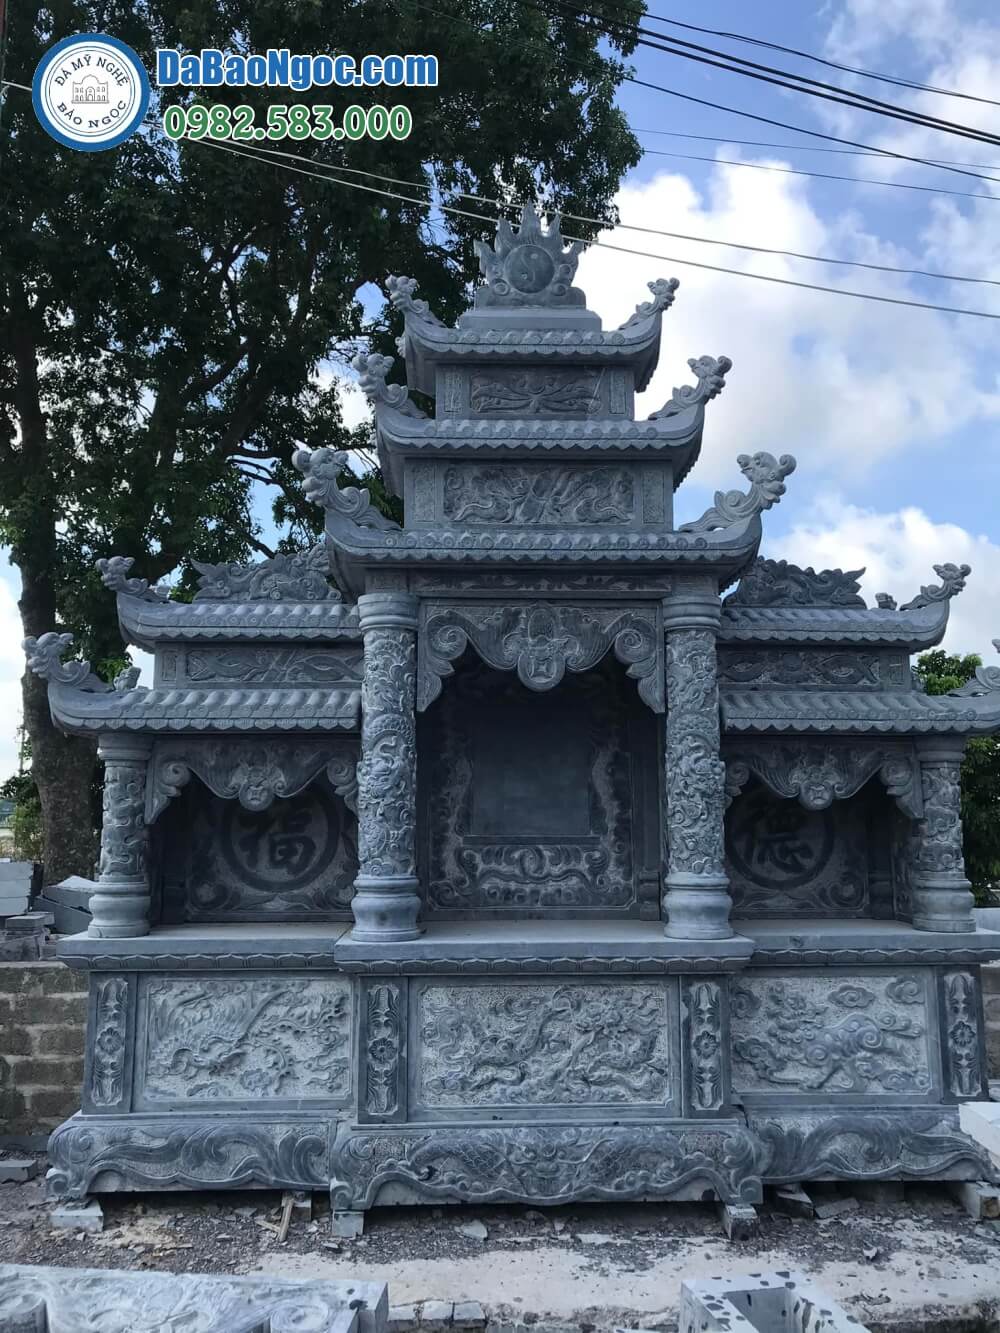 Bán và xây dựng, làm Lăng thờ đá ở Quảng Bình rẻ đẹp